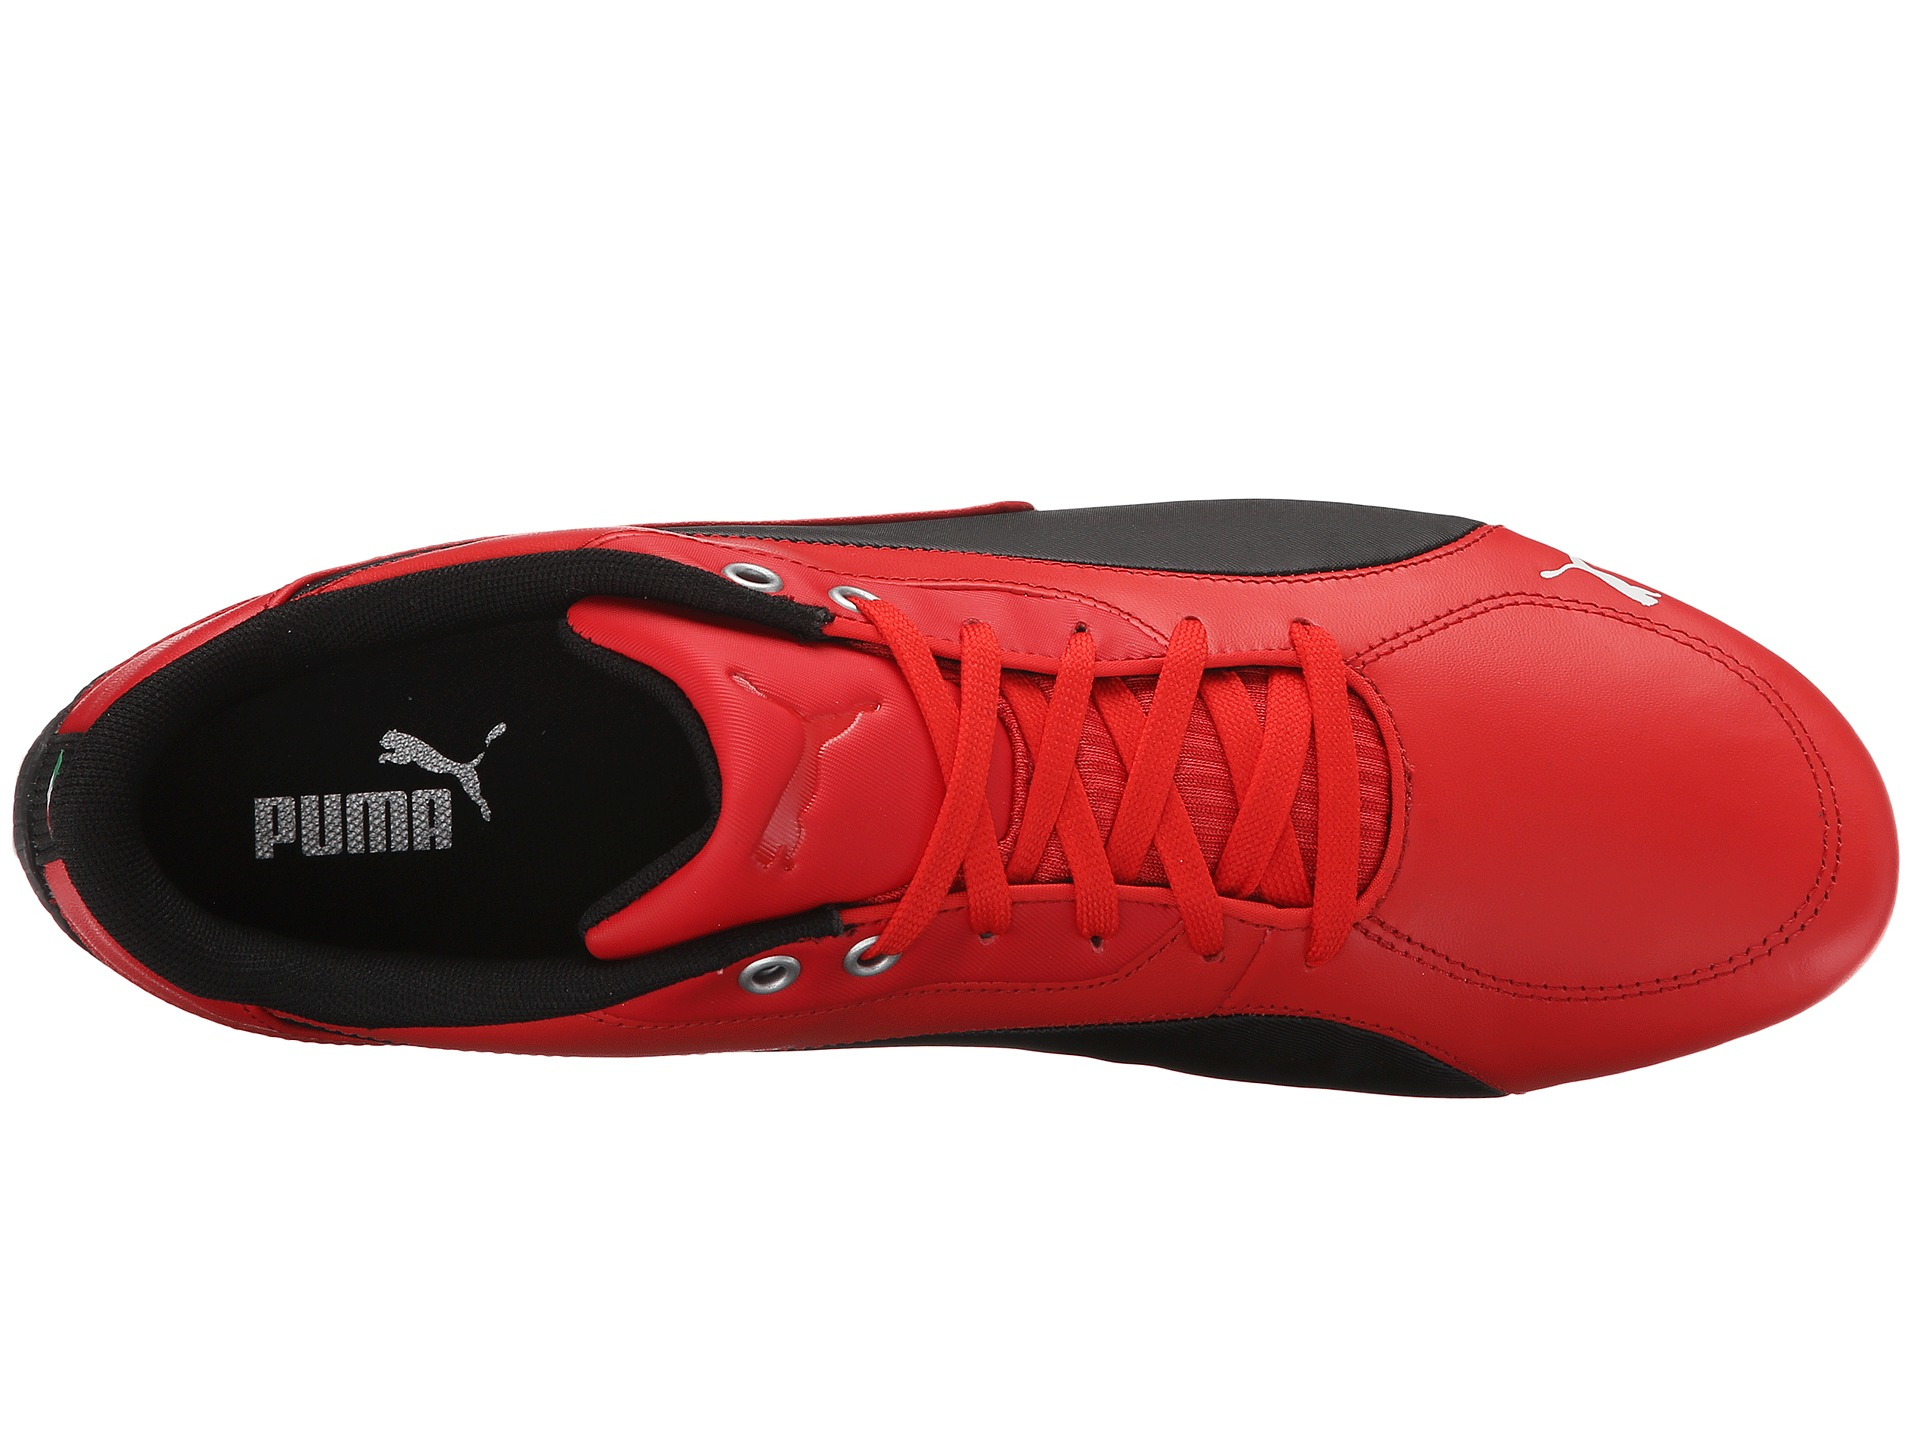 PUMA Drift Cat 5 Sf Nm 2 in Red for Men - Lyst